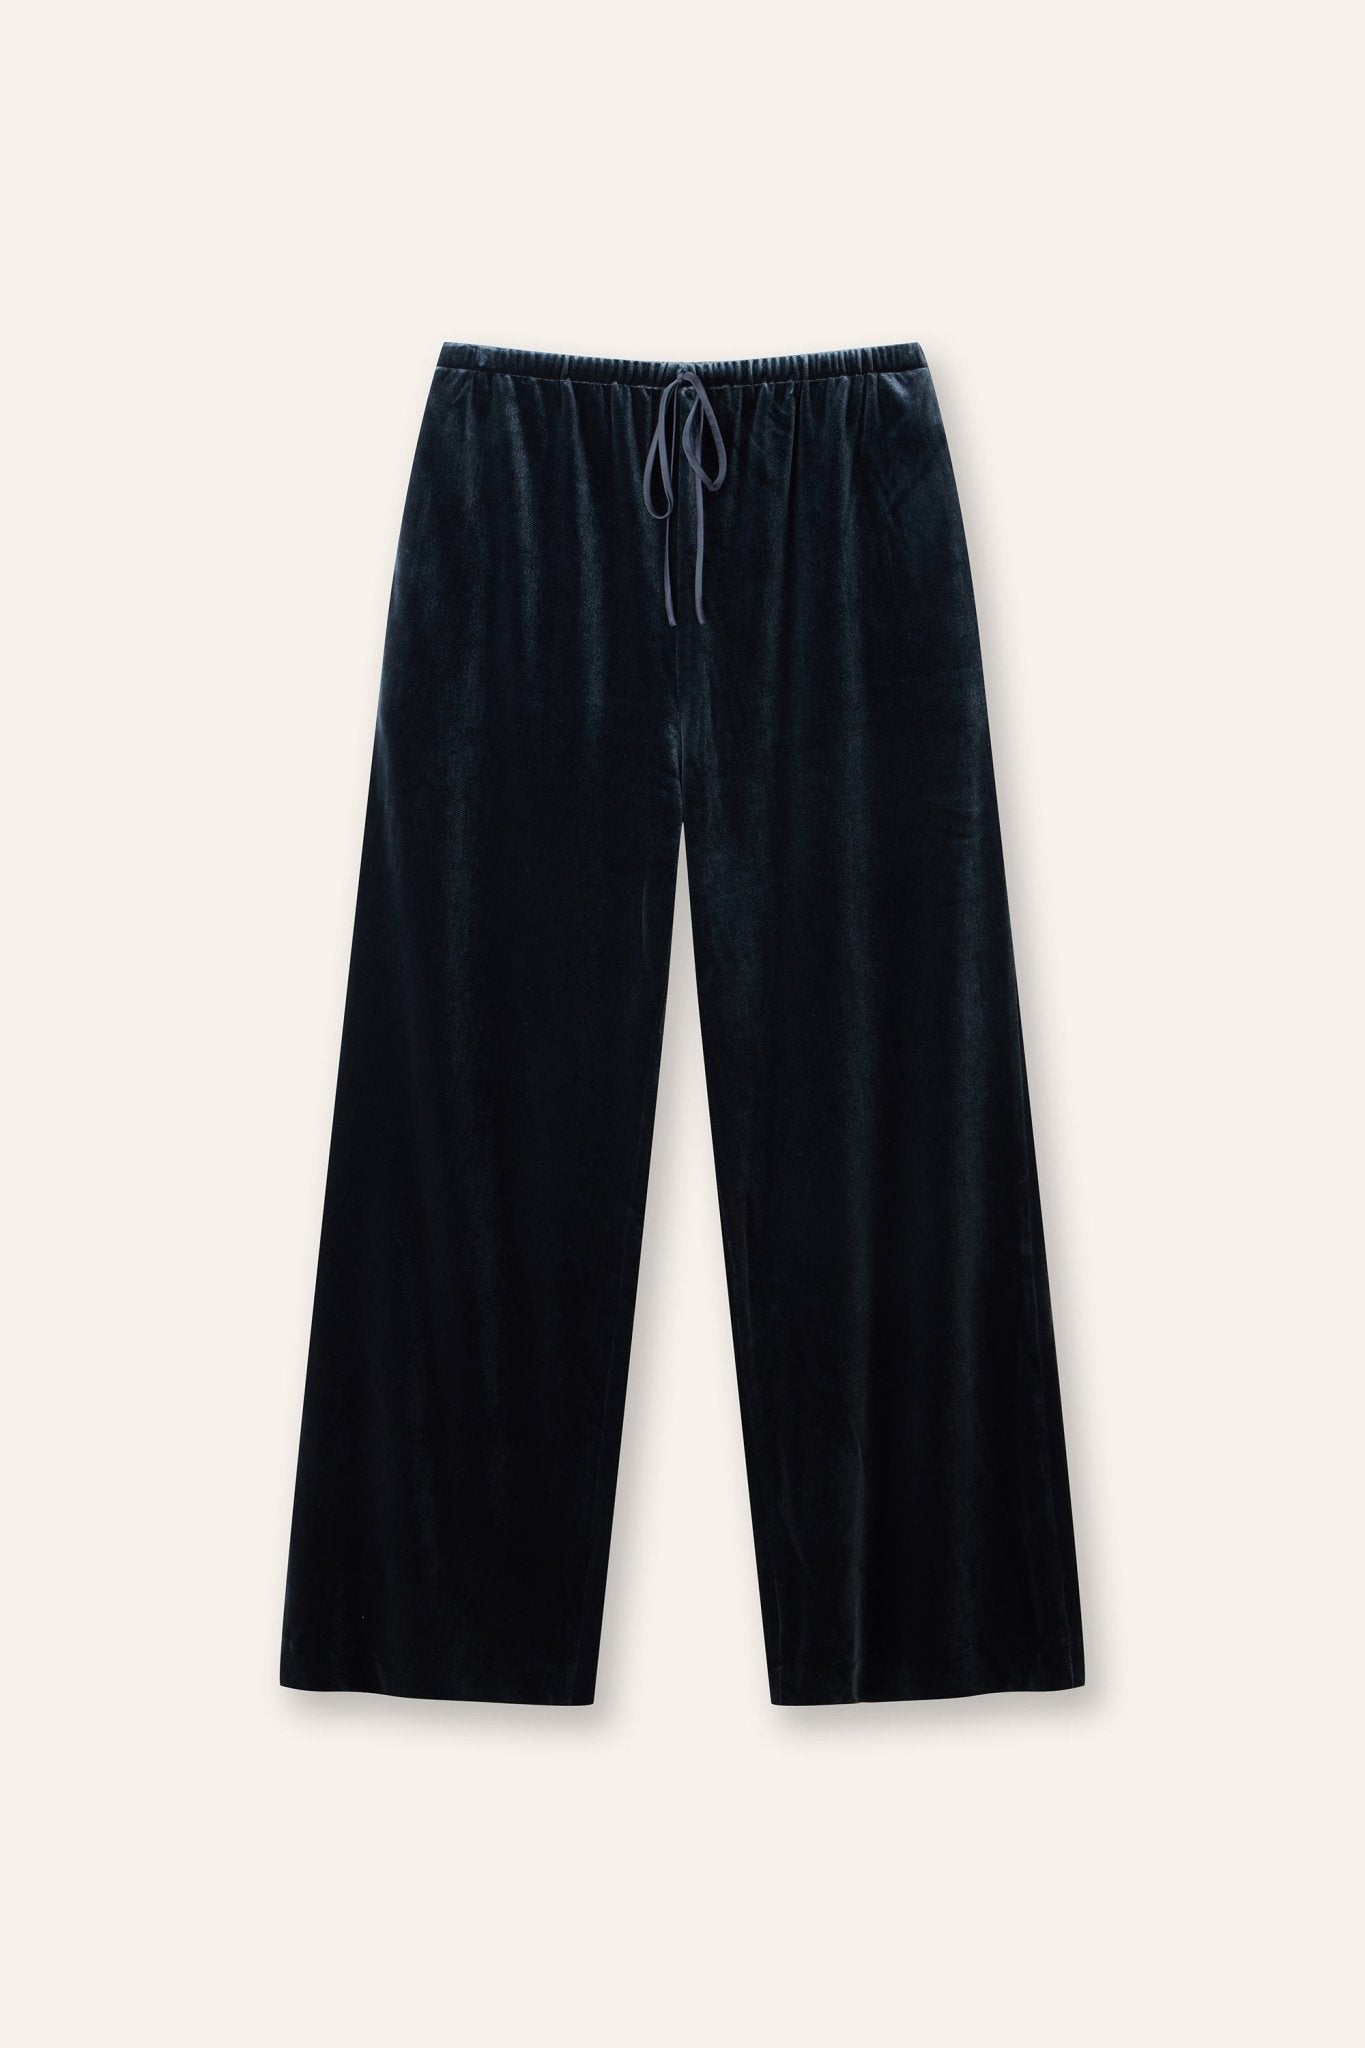 JOLIE velvet pants (Grey blue) - STELLAM